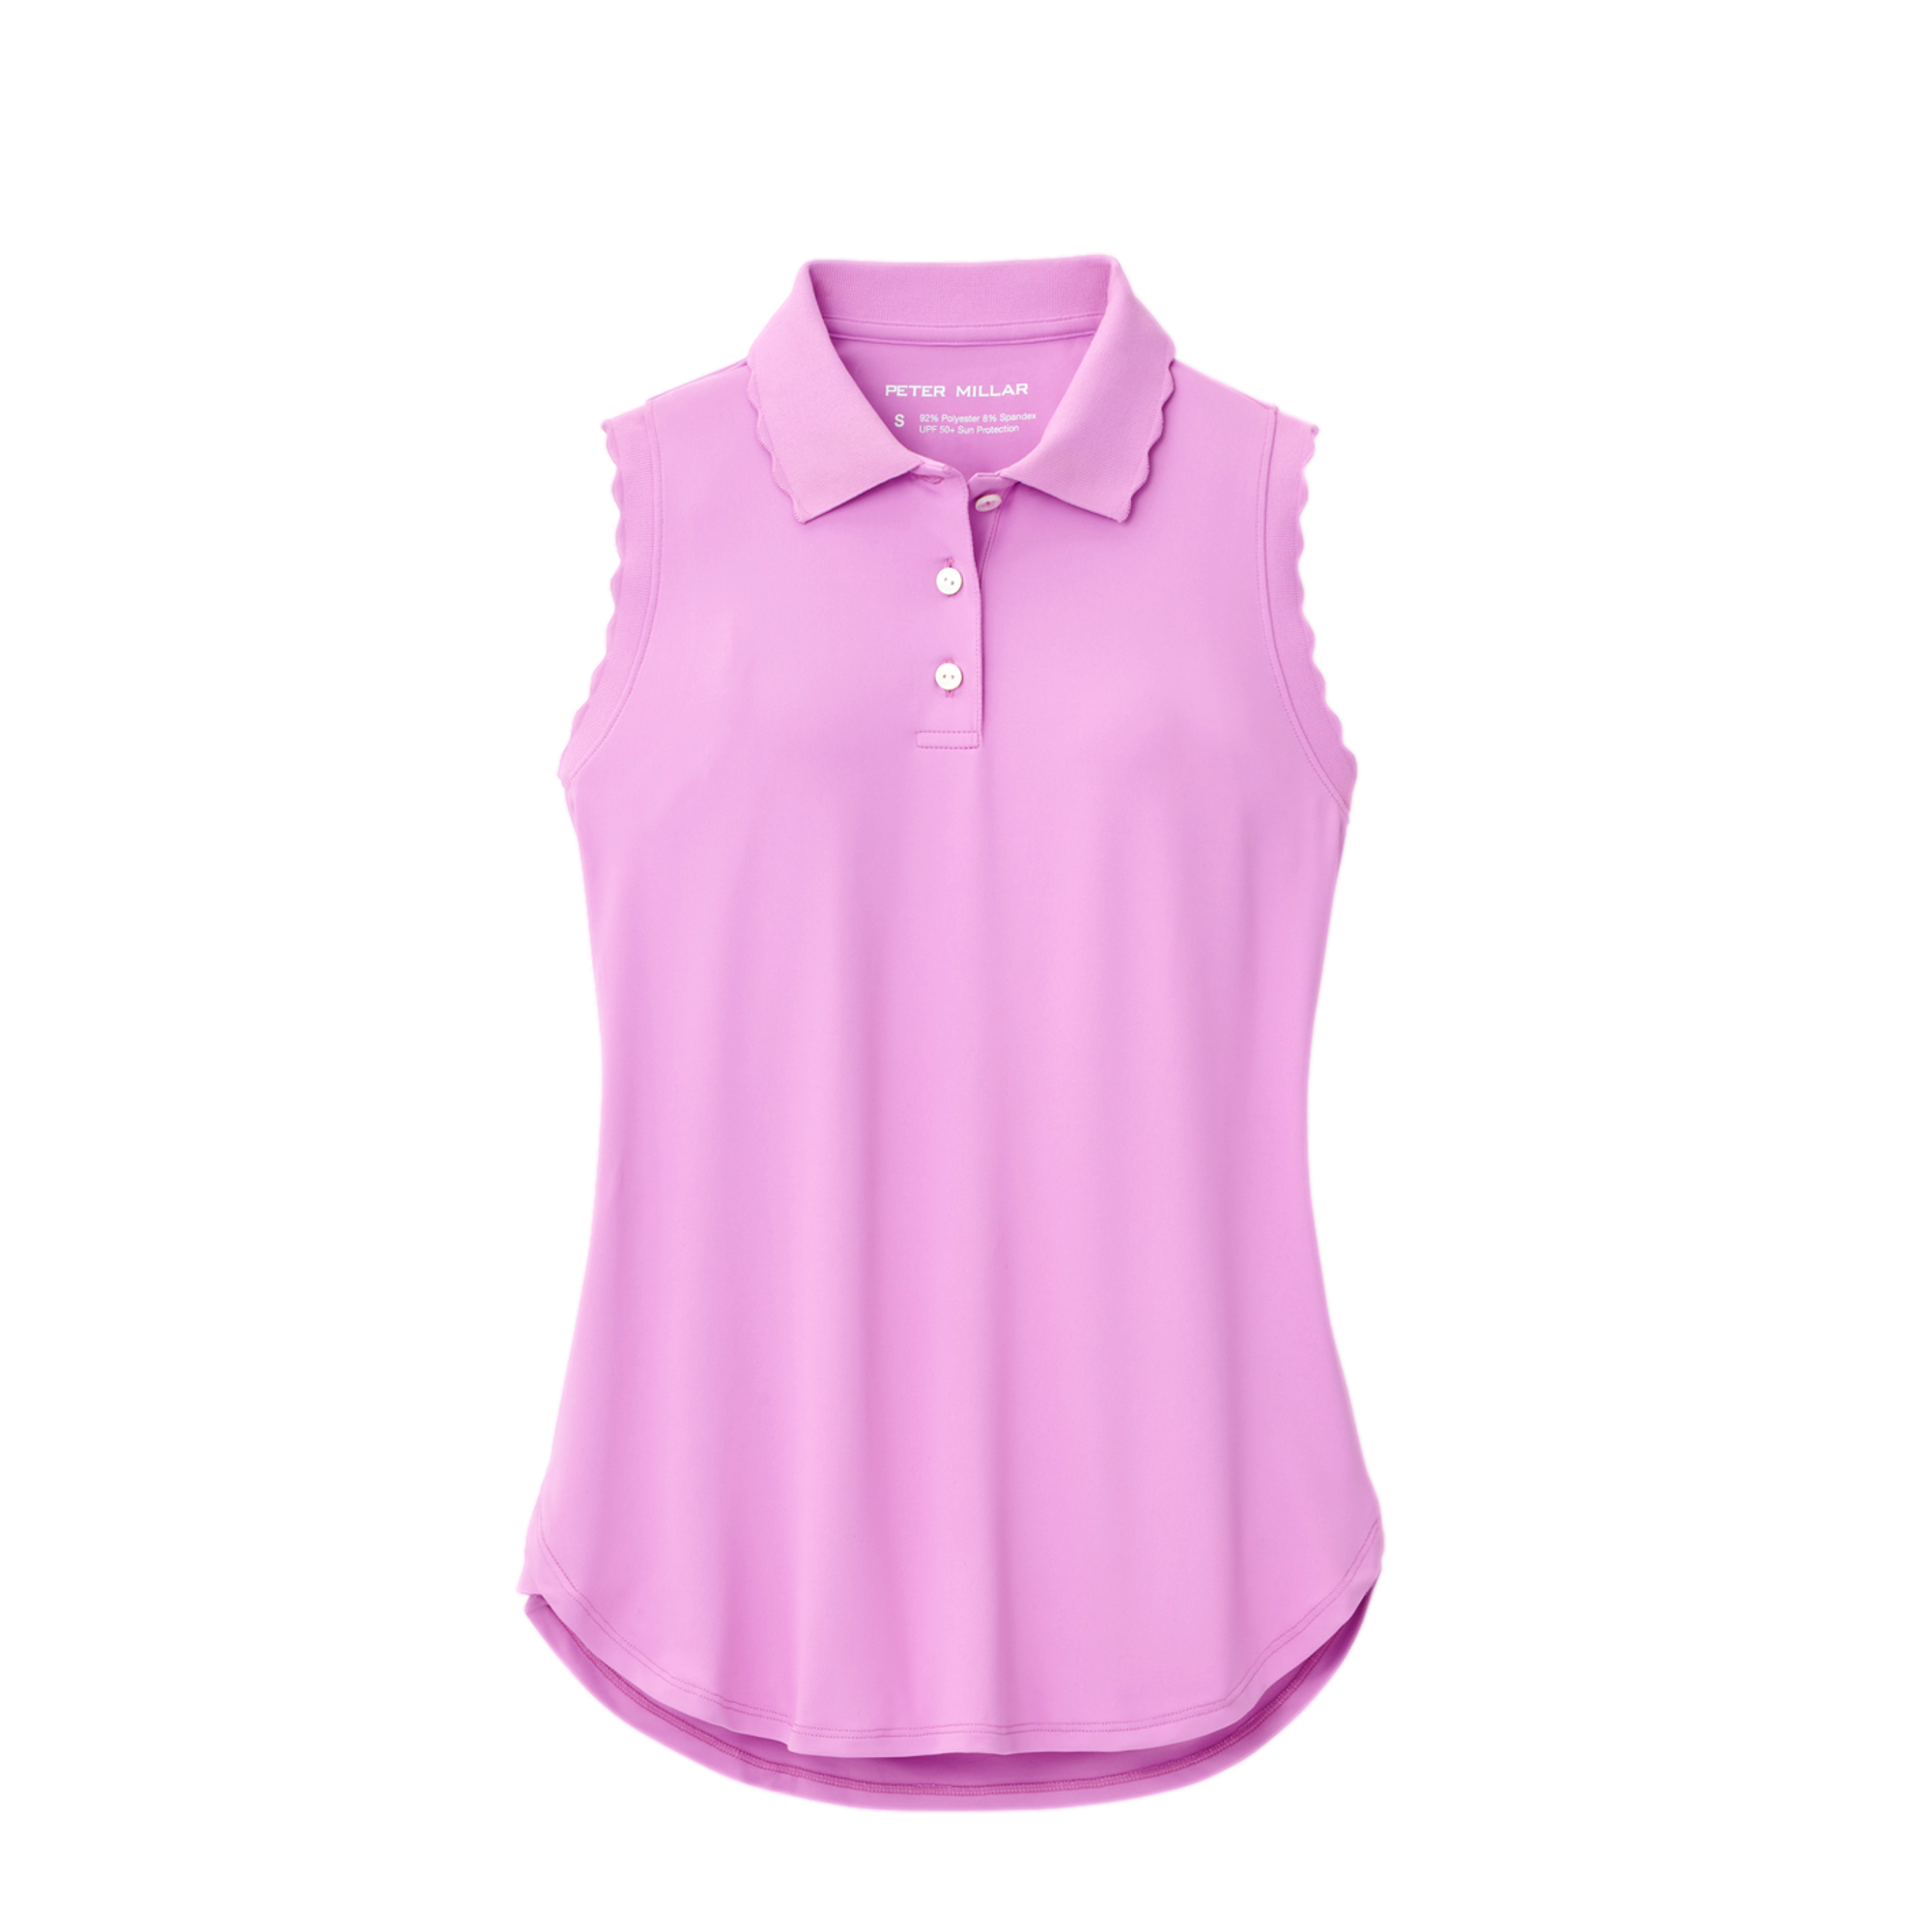 Polo Ralph Lauren Cotton Sleeveless Polo Shirt, Golf Equipment: Clubs,  Balls, Bags